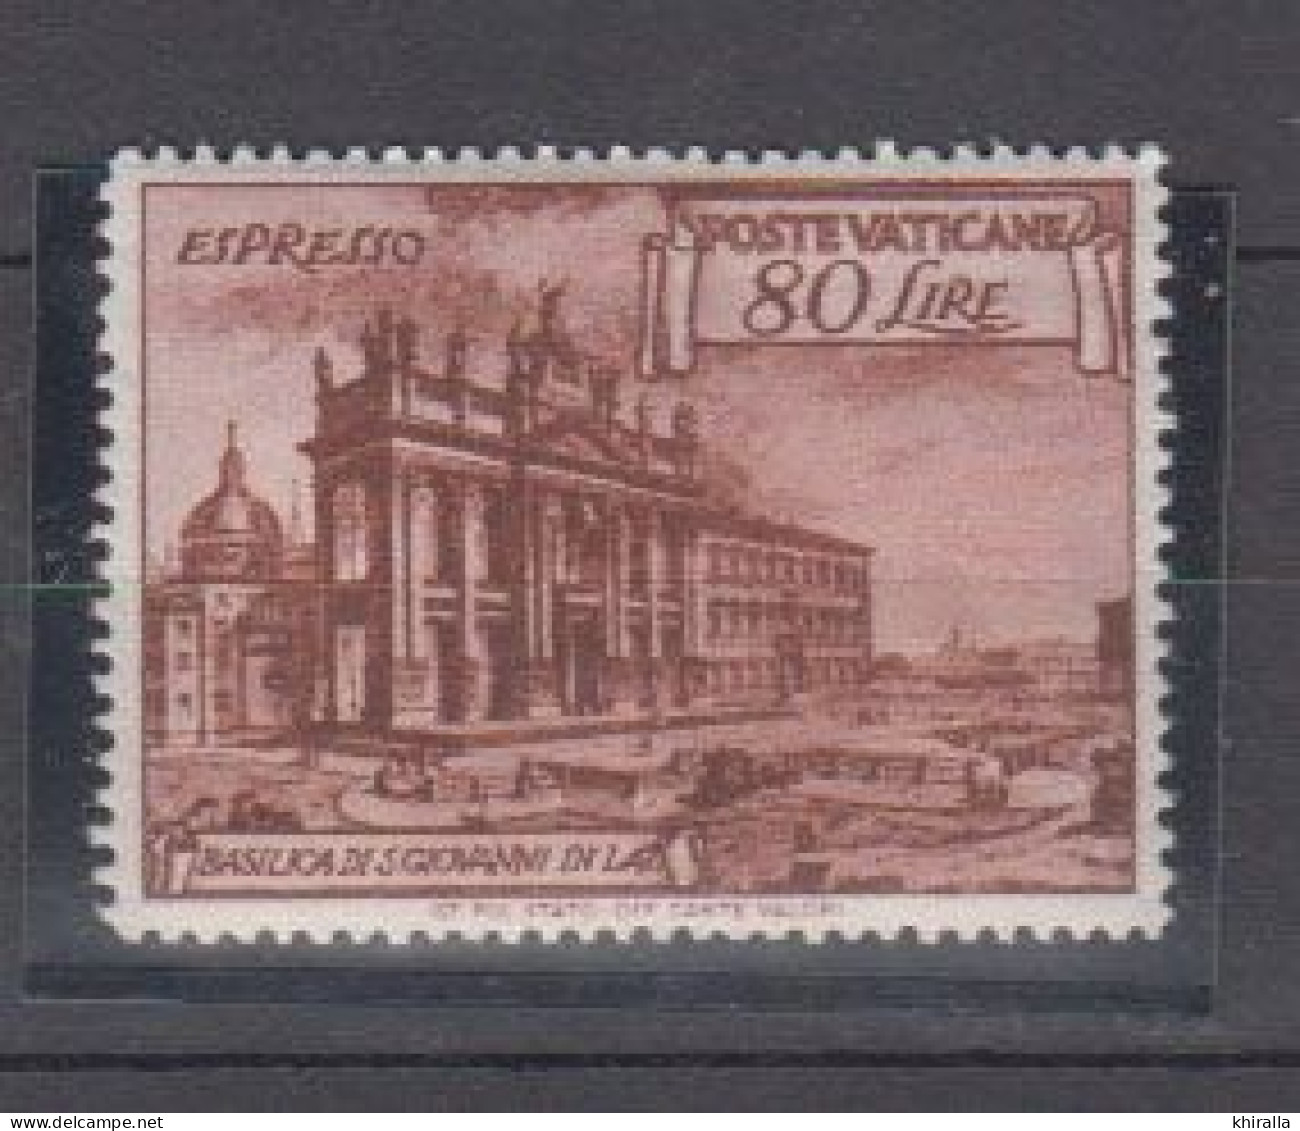 VATICAN    1949    Exprés  N°  11   ( Neufs Sans Charniére )   COTE  55 € 00       ( D 88 ) - Exprès